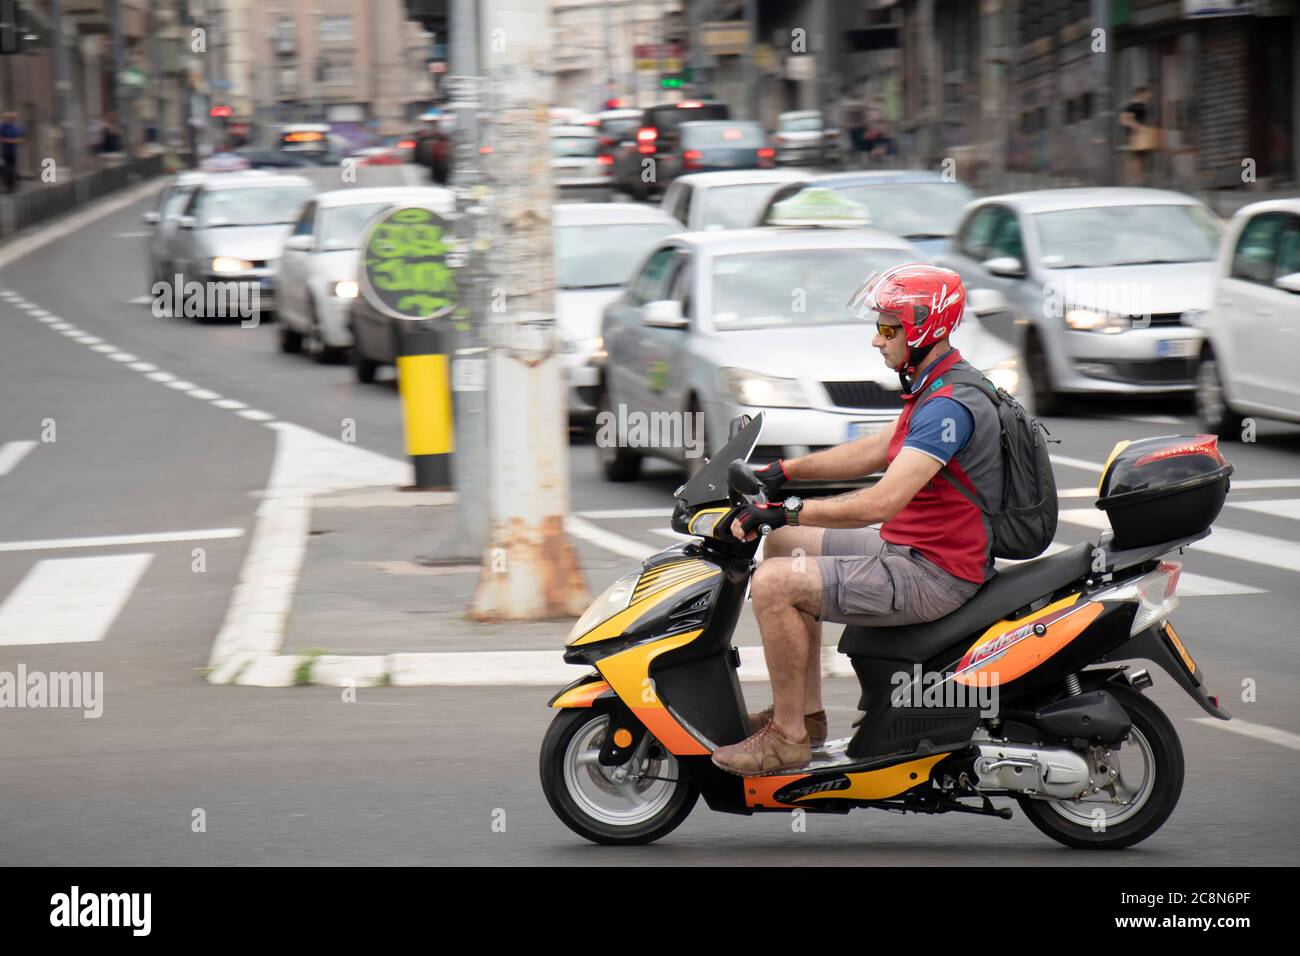 Belgrade, Serbie - 16 juillet 2020 : homme mature qui fait la course d'un scooter en ville, sur le carrefour avec des voitures en file d'attente Banque D'Images